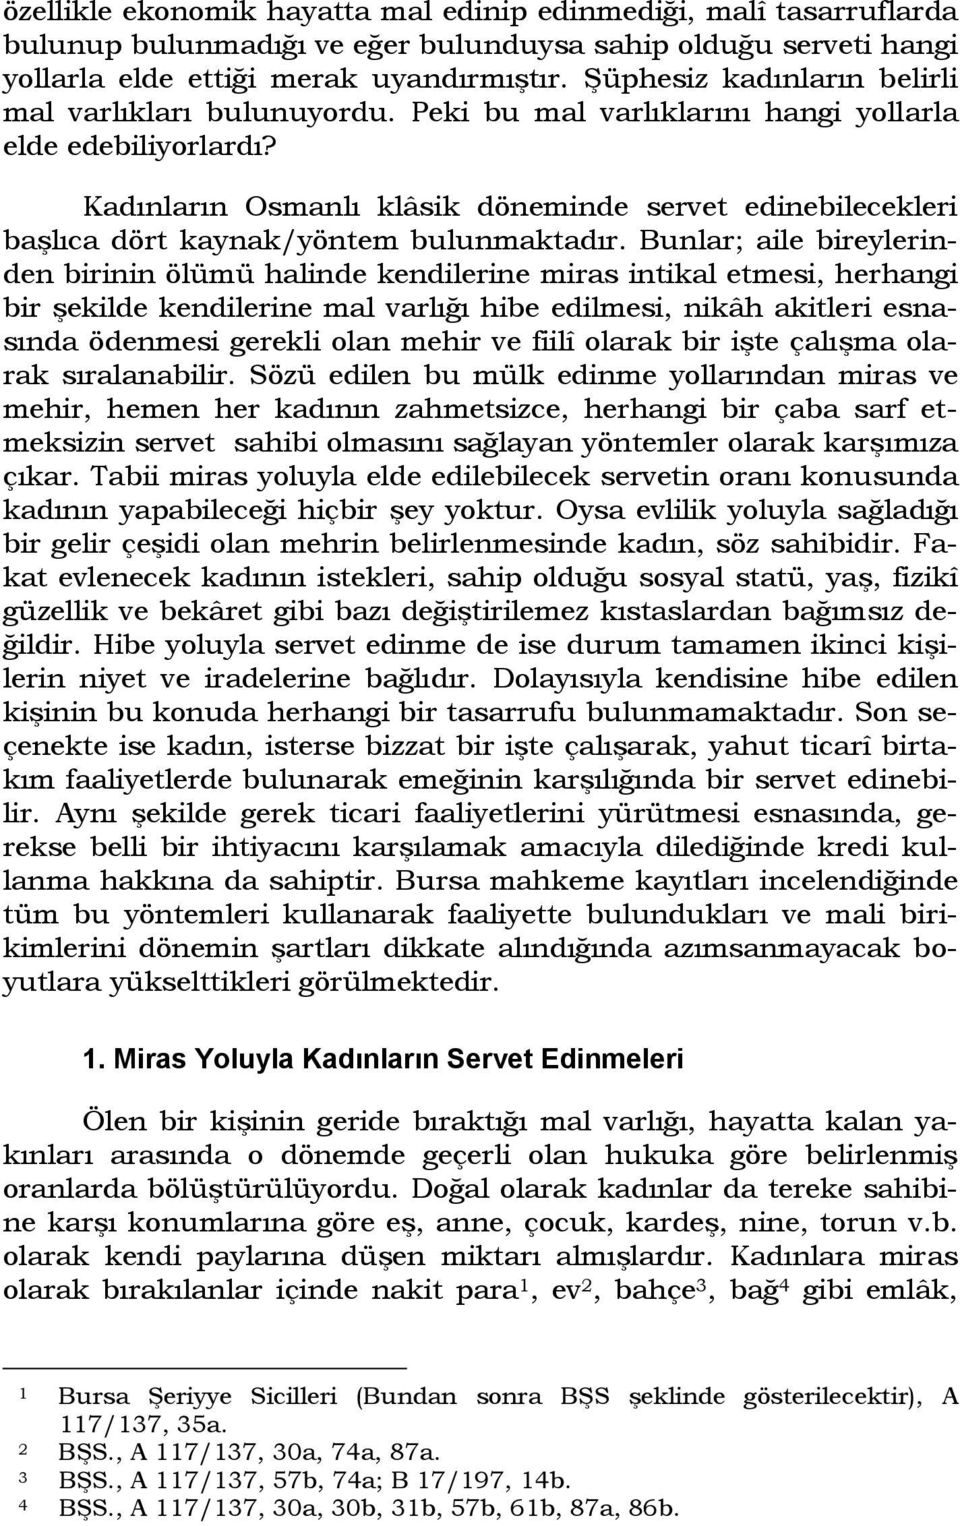 Kadınların Osmanlı klâsik döneminde servet edinebilecekleri başlıca dört kaynak/yöntem bulunmaktadır.